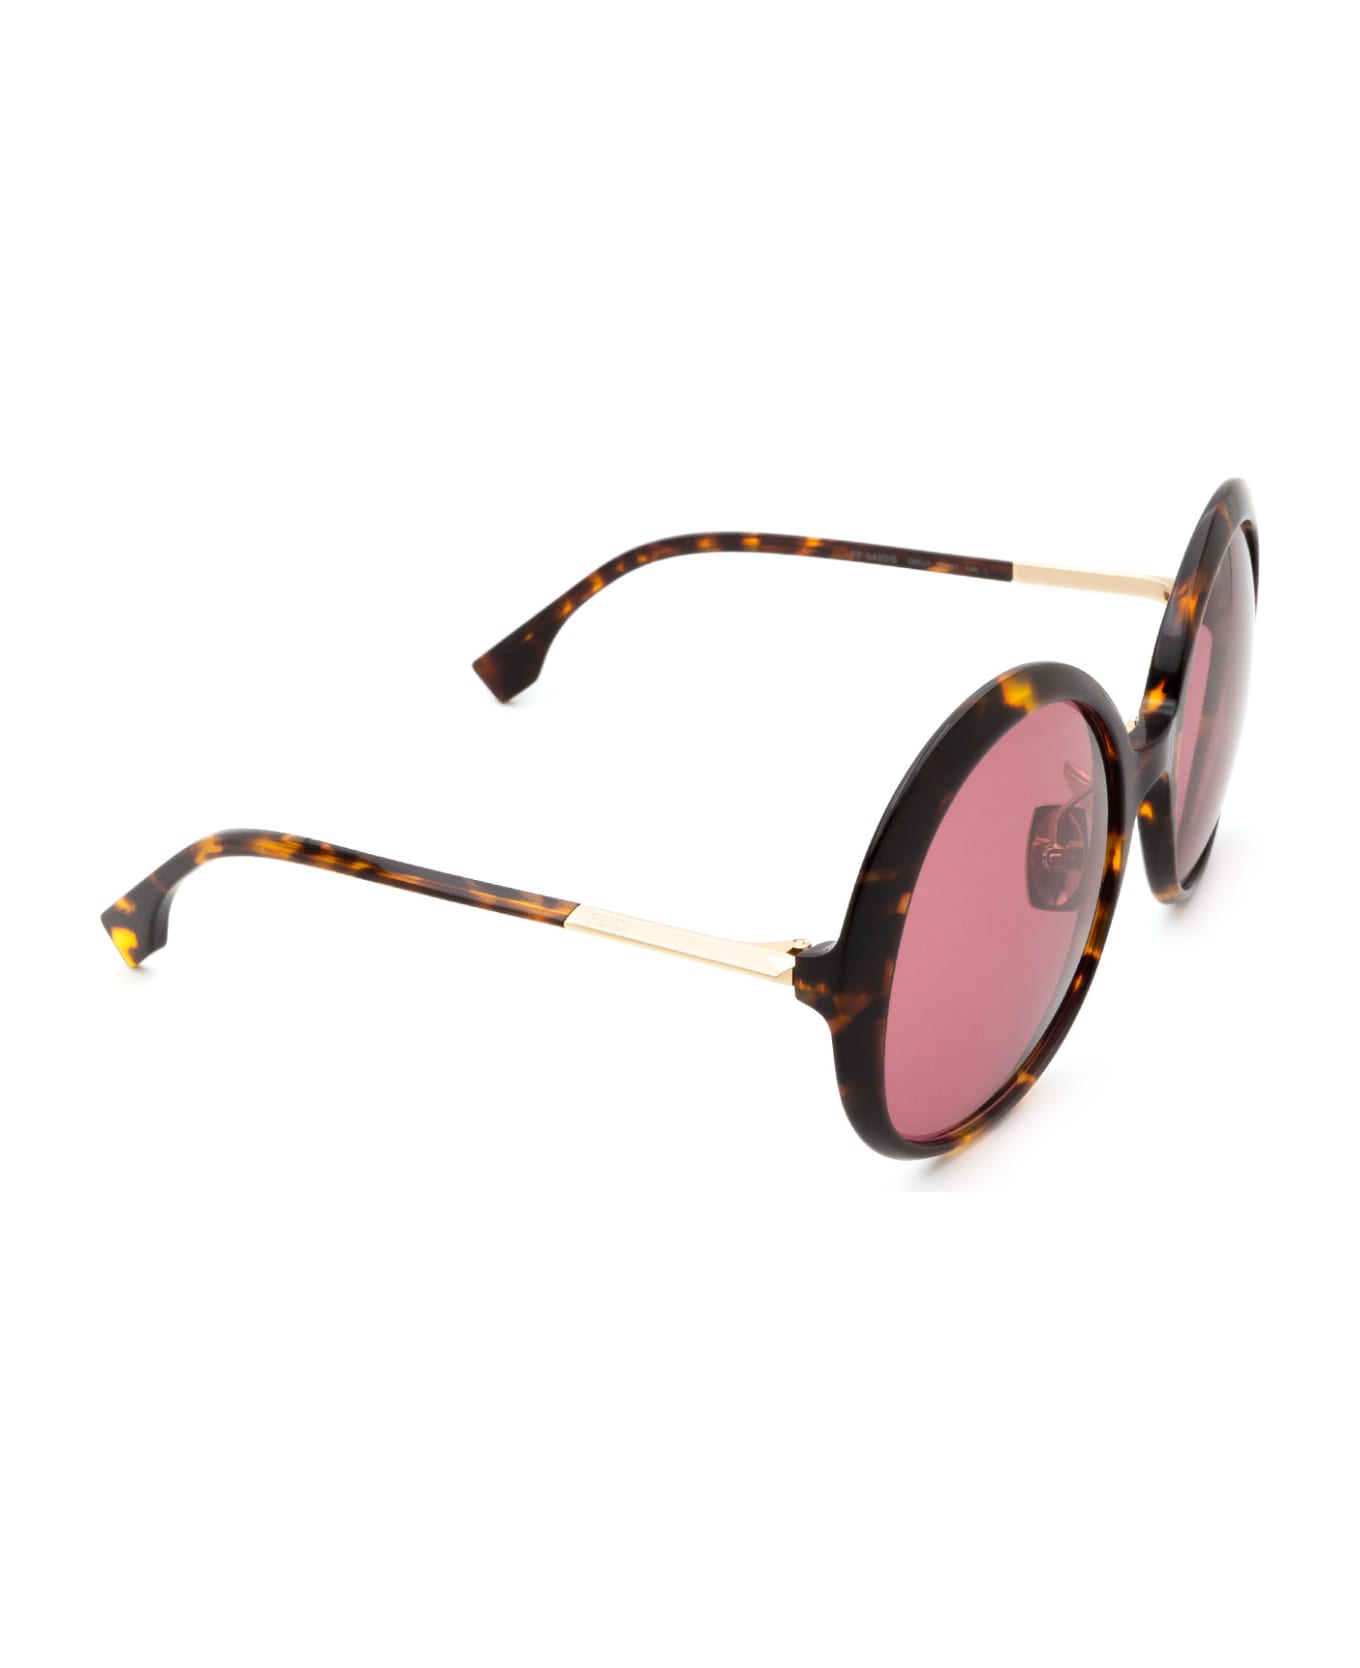 Fendi Eyewear Ff 0430/s Dark Havana Sunglasses - Dark Havana